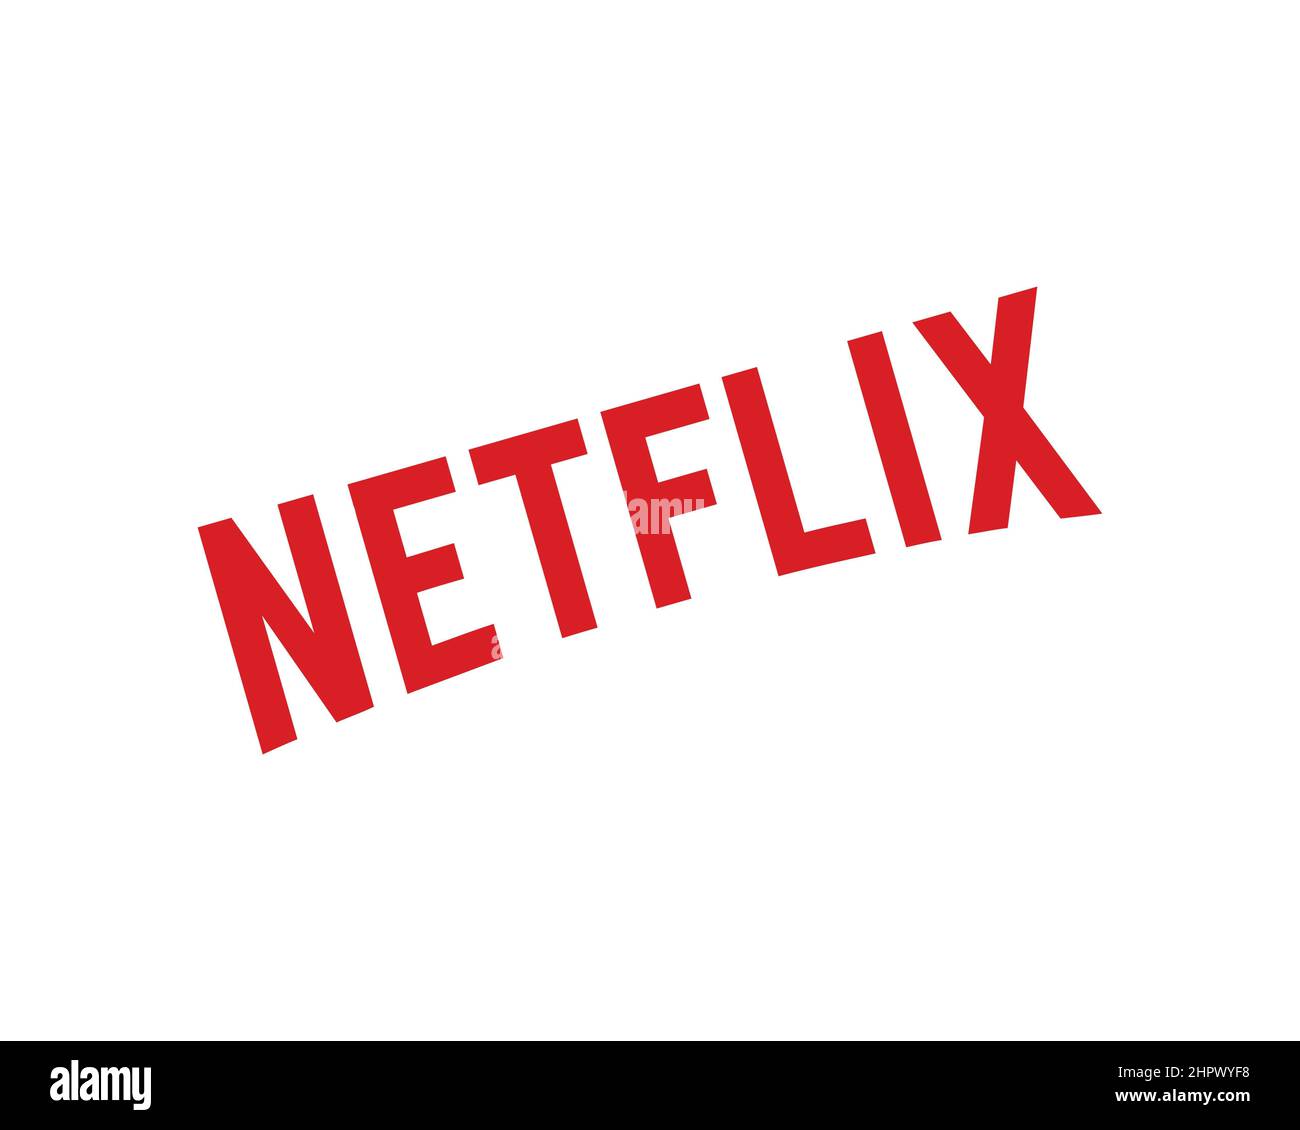 Logo của Netflix được thiết kế đơn giản và hiện đại, mang lại cảm giác chuyên nghiệp cho khán giả. Hãy xem hình ảnh liên quan đến logo để tận hưởng trải nghiệm xem phim thú vị trên Netflix.